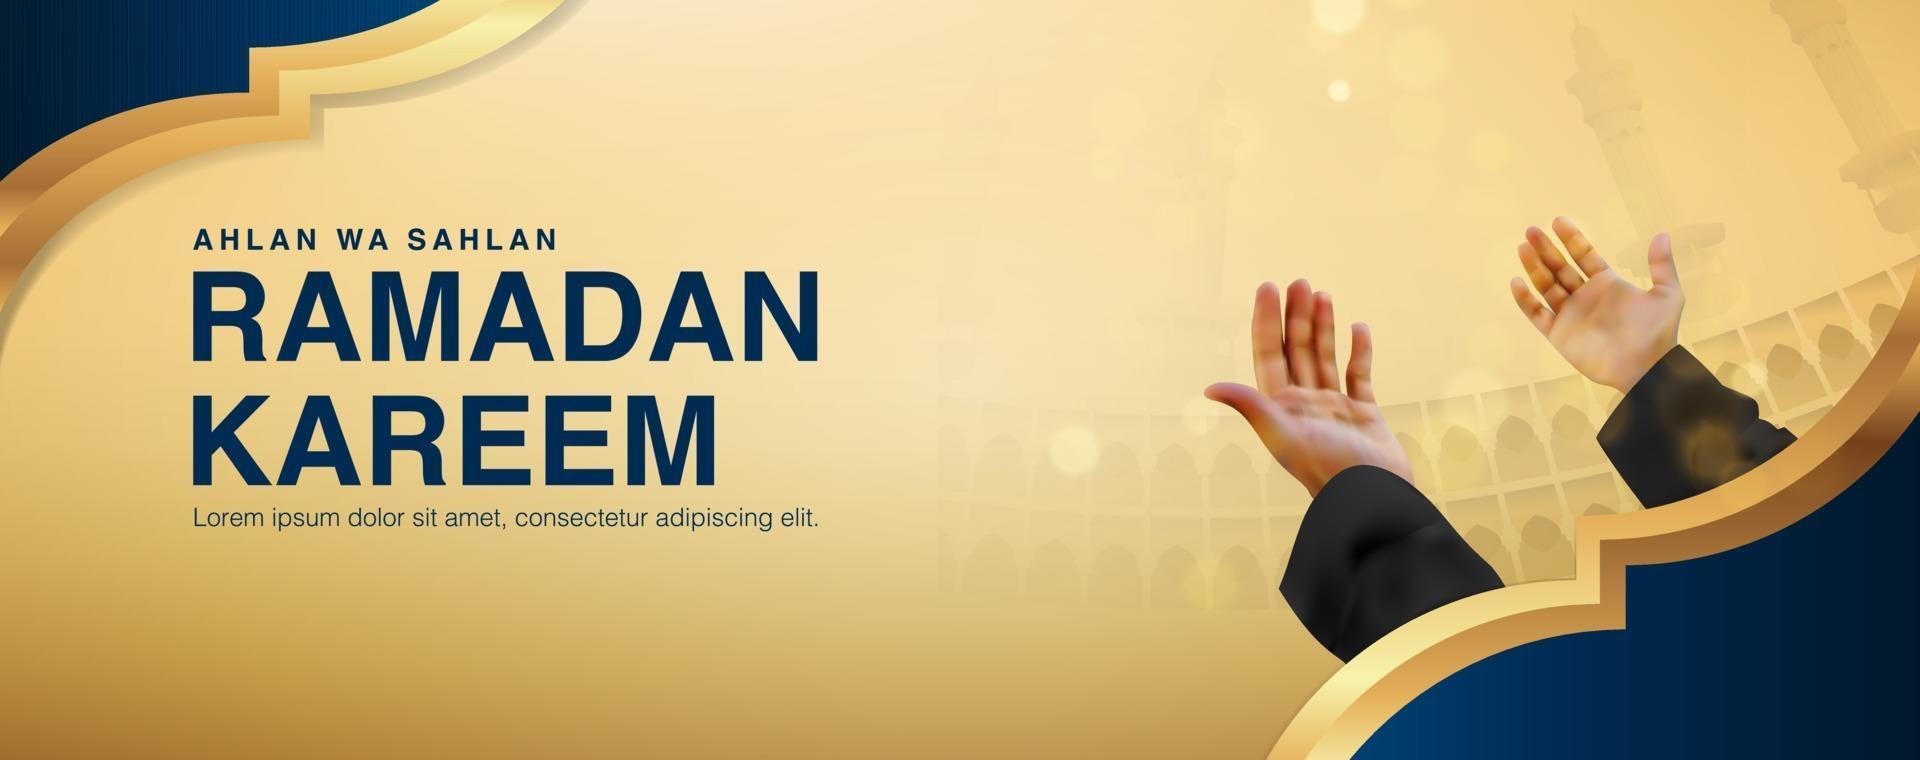 fond de vecteur ramadan kareem avec homme priant en levant les deux mains, conception réaliste 3d